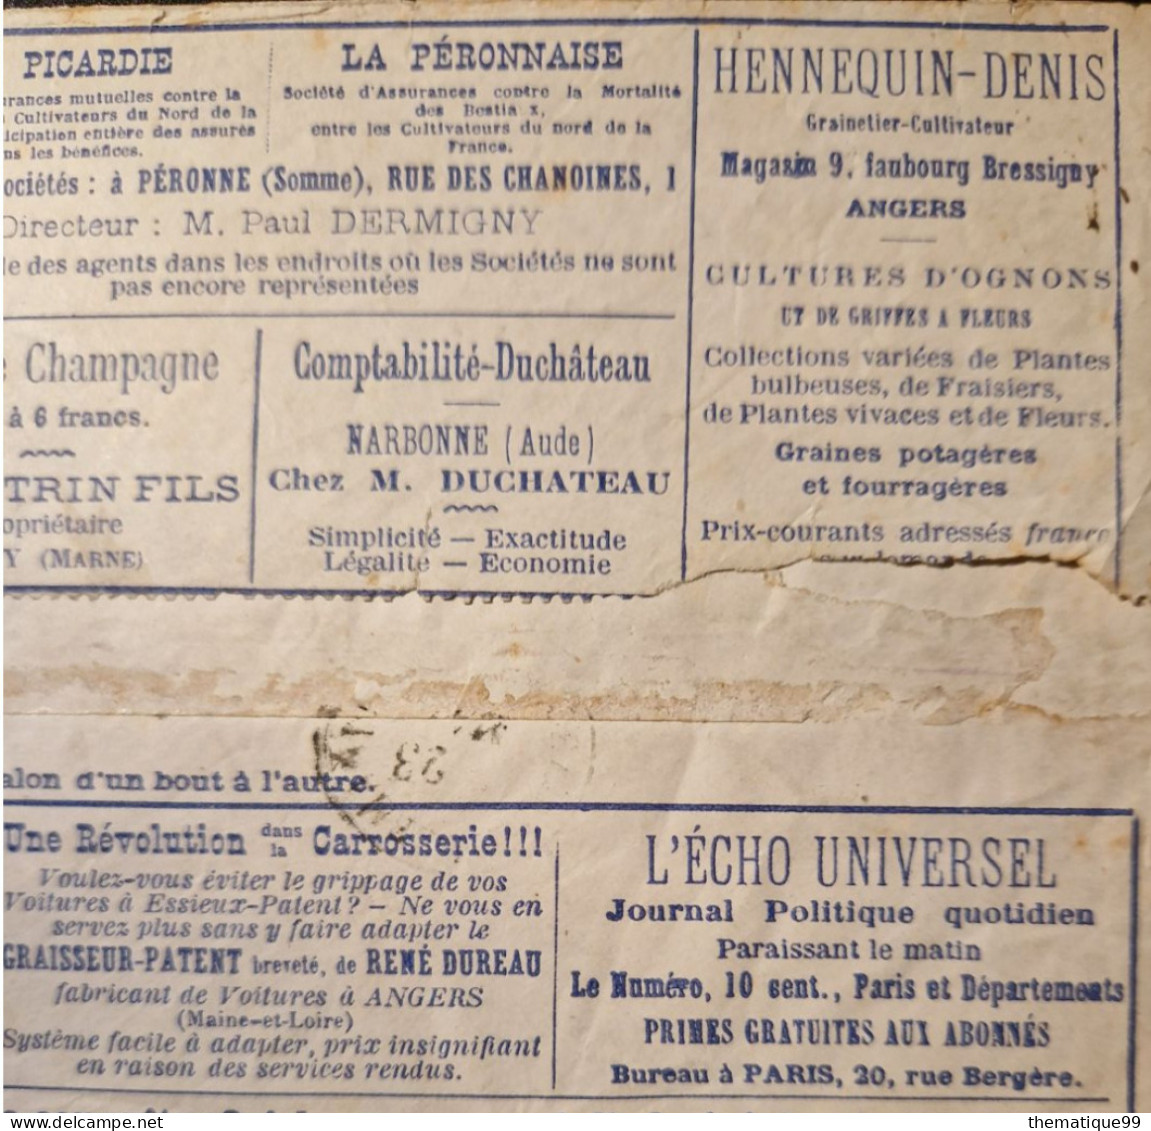 Lettre avec publicités précurseur vendue à tarif réduit (1876) : barbe graine voiture cheval vin grêle oignon fraise